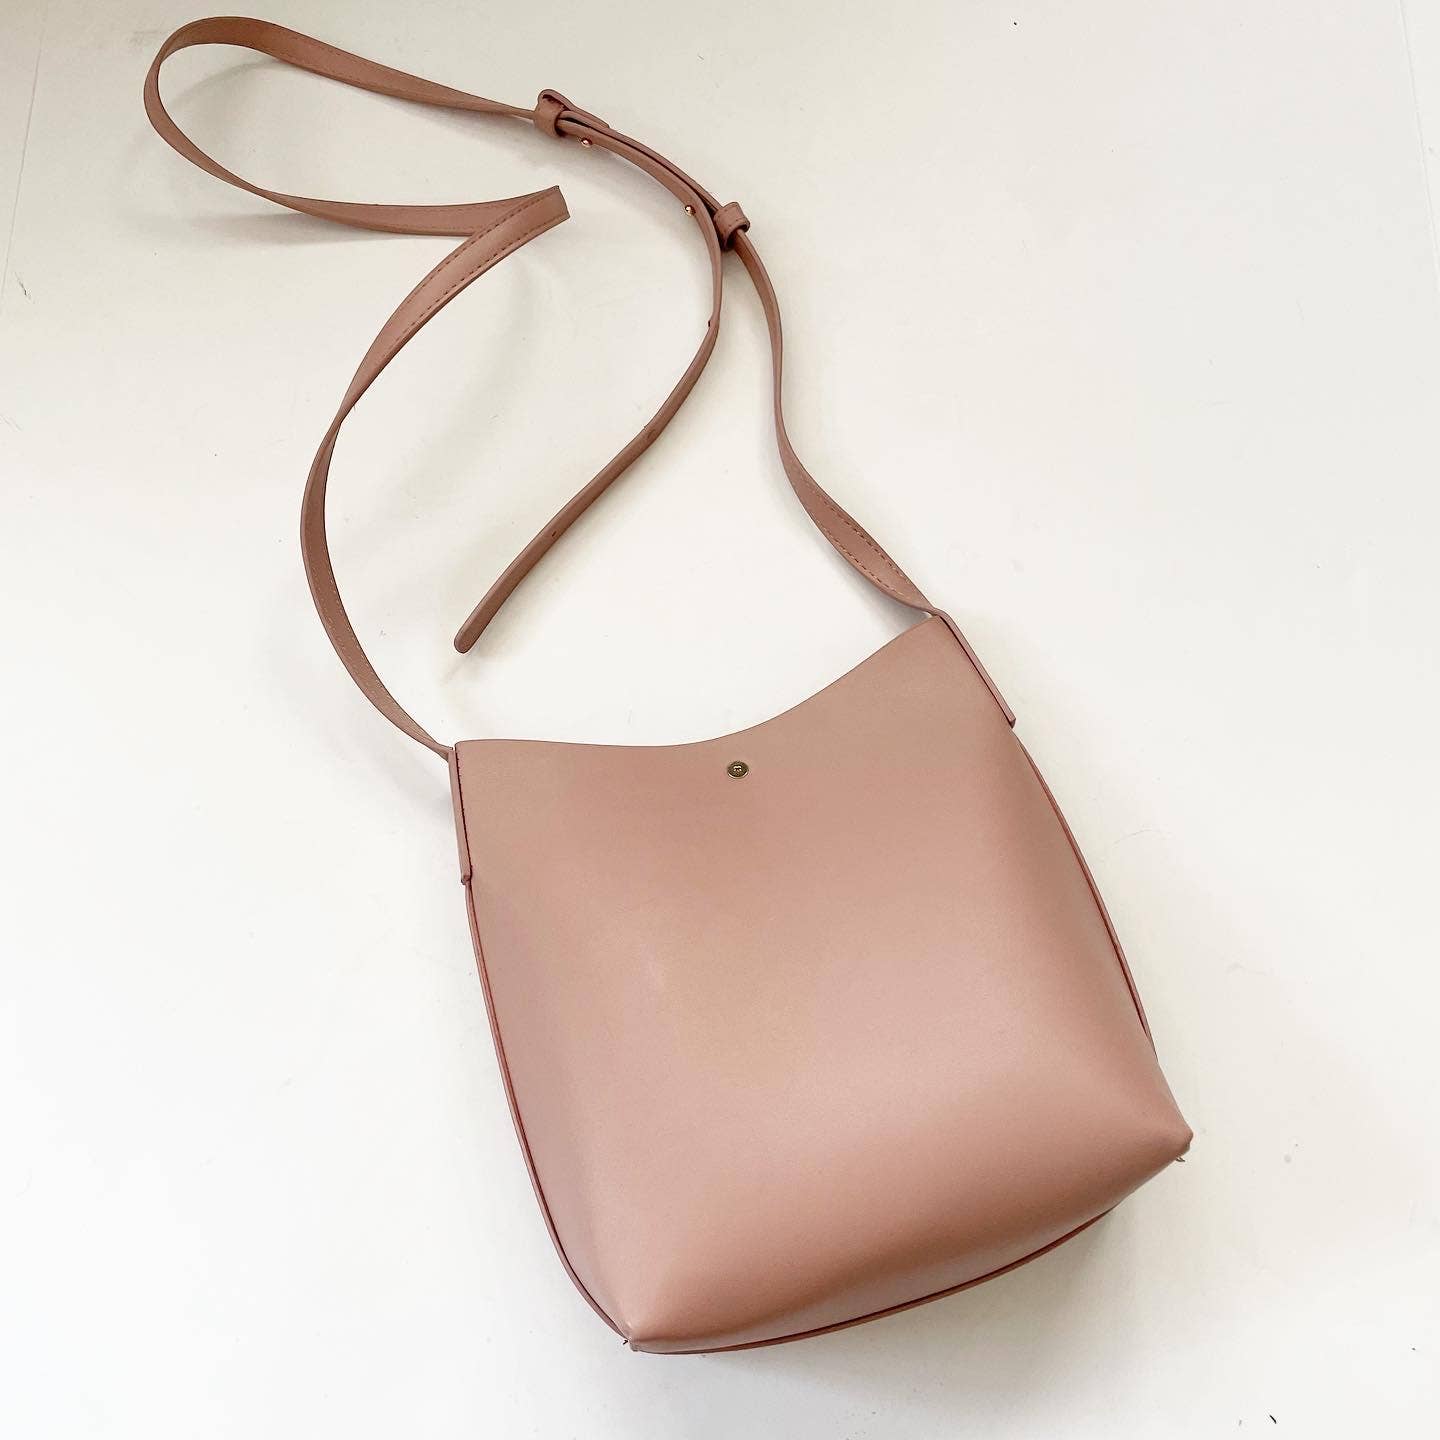 Samara Vegan Leather Pink Shoulder Bag